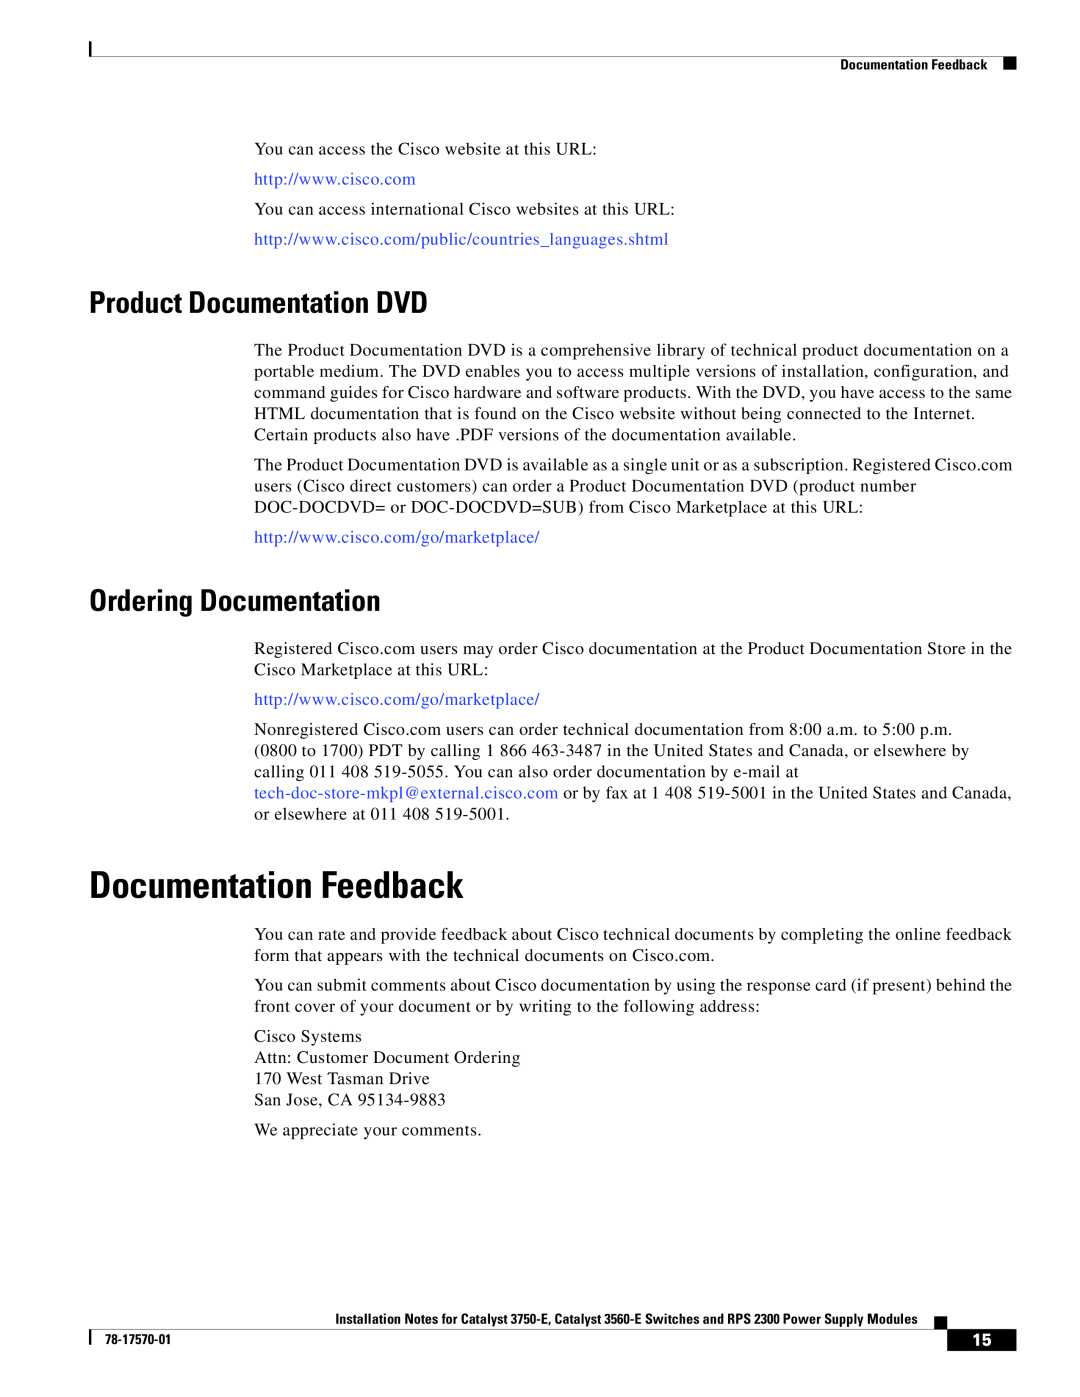 Cisco Systems RPS 2300, 3560-E, 3750-E Documentation Feedback, Product Documentation DVD, Ordering Documentation 